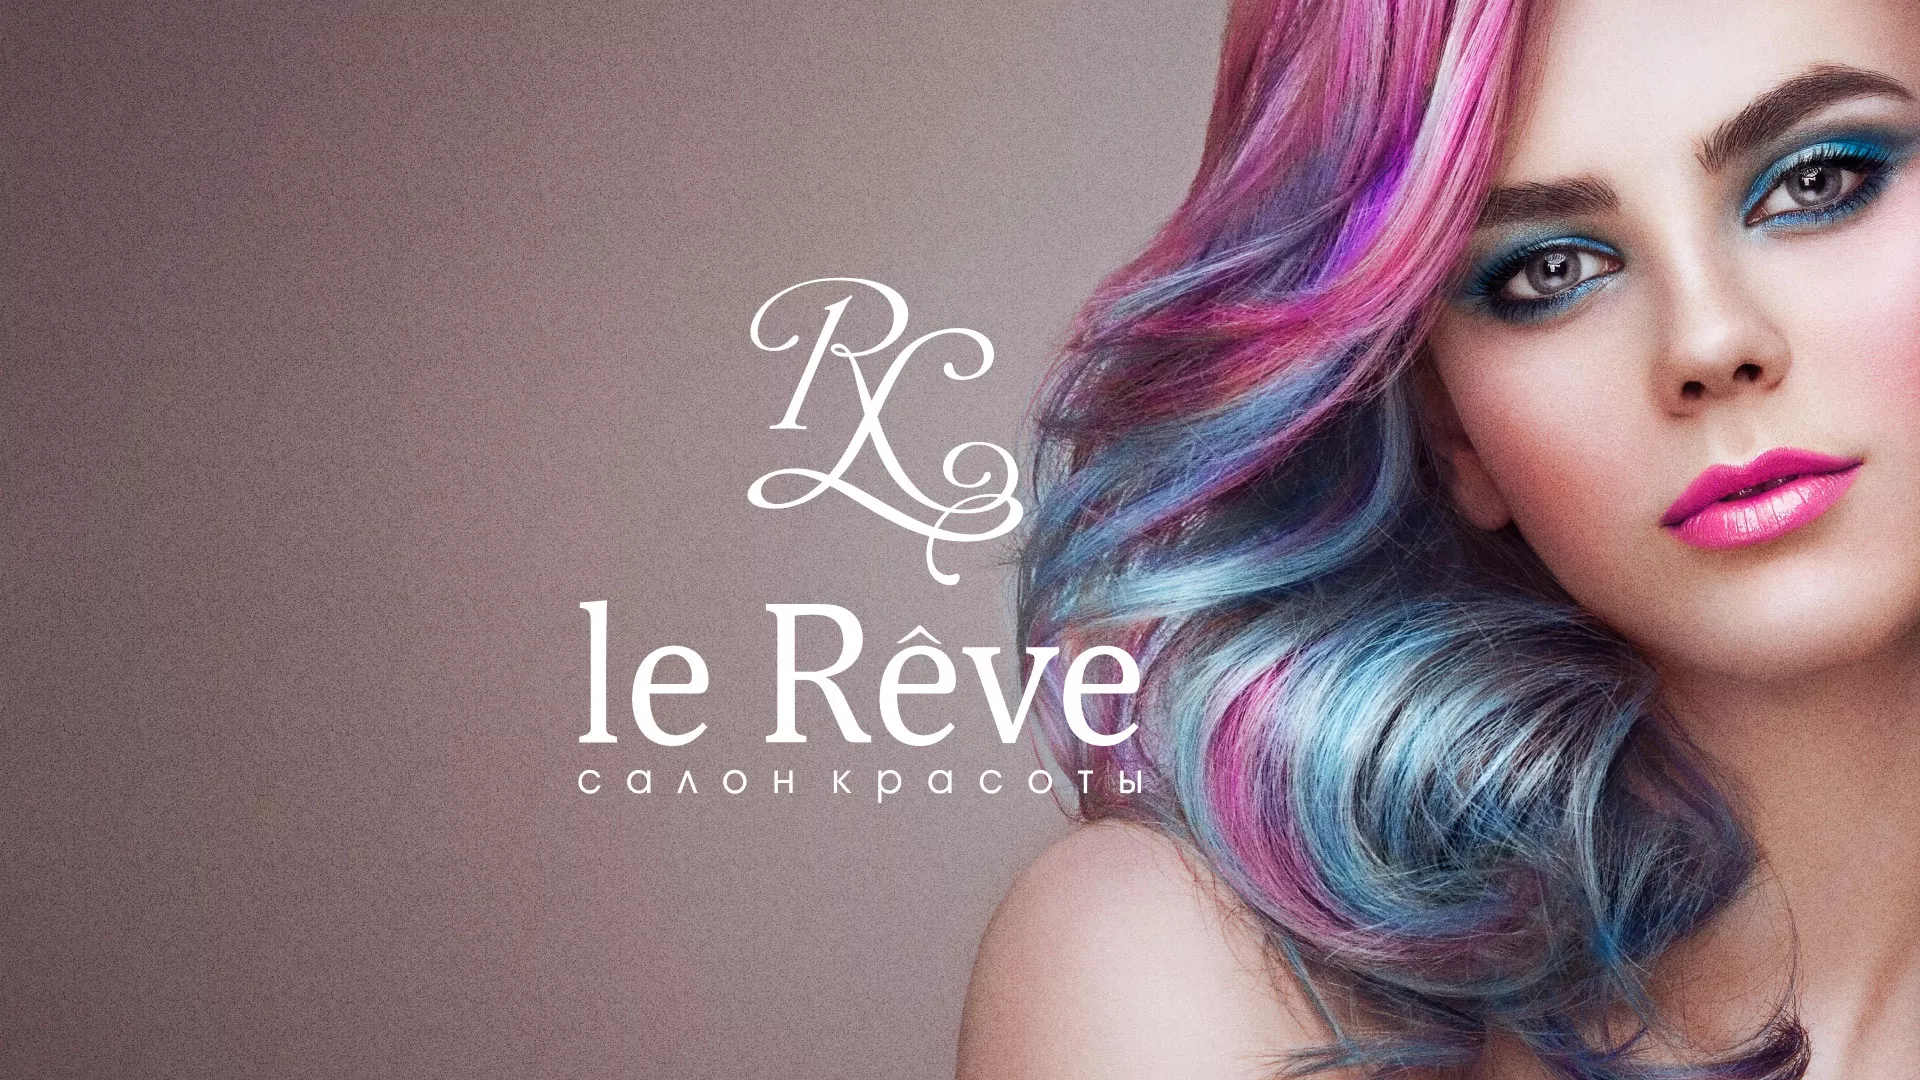 Создание сайта для салона красоты «Le Reve» в Боровске